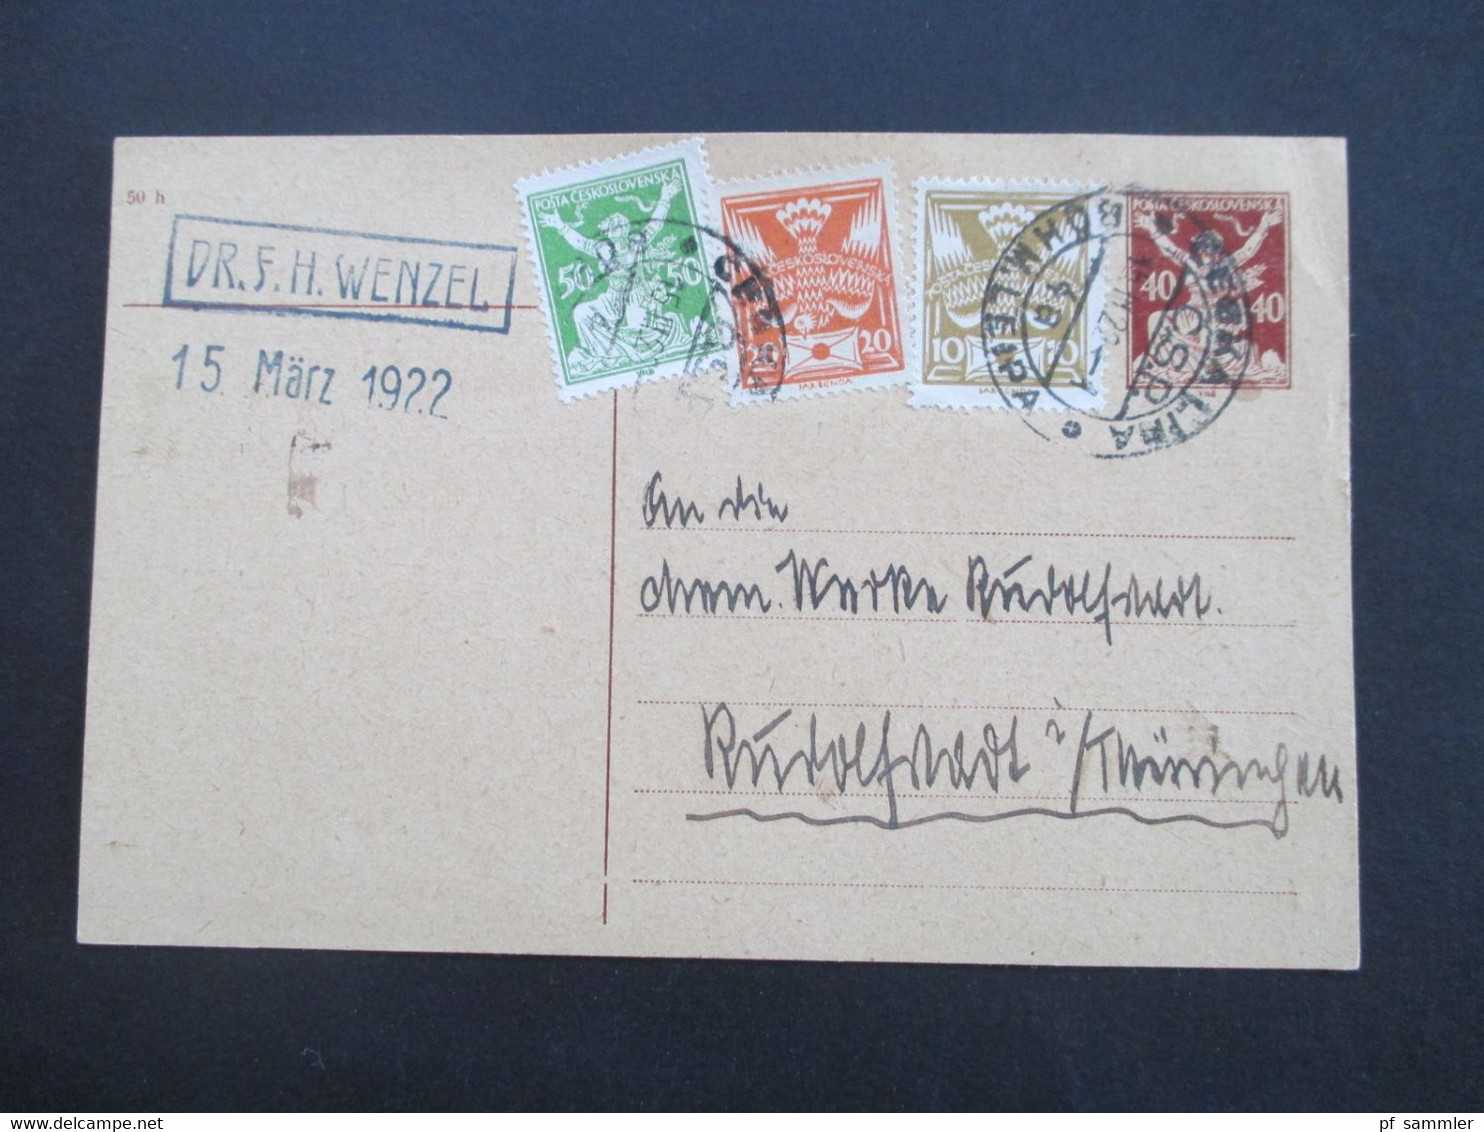 CSSR 1922 Ganzsache Mit 3 Zusatzfrankaturen Böhmisch Leipa Absender Dr. F.H. Wenzel Nach Rudolstadt Thüringen - Covers & Documents